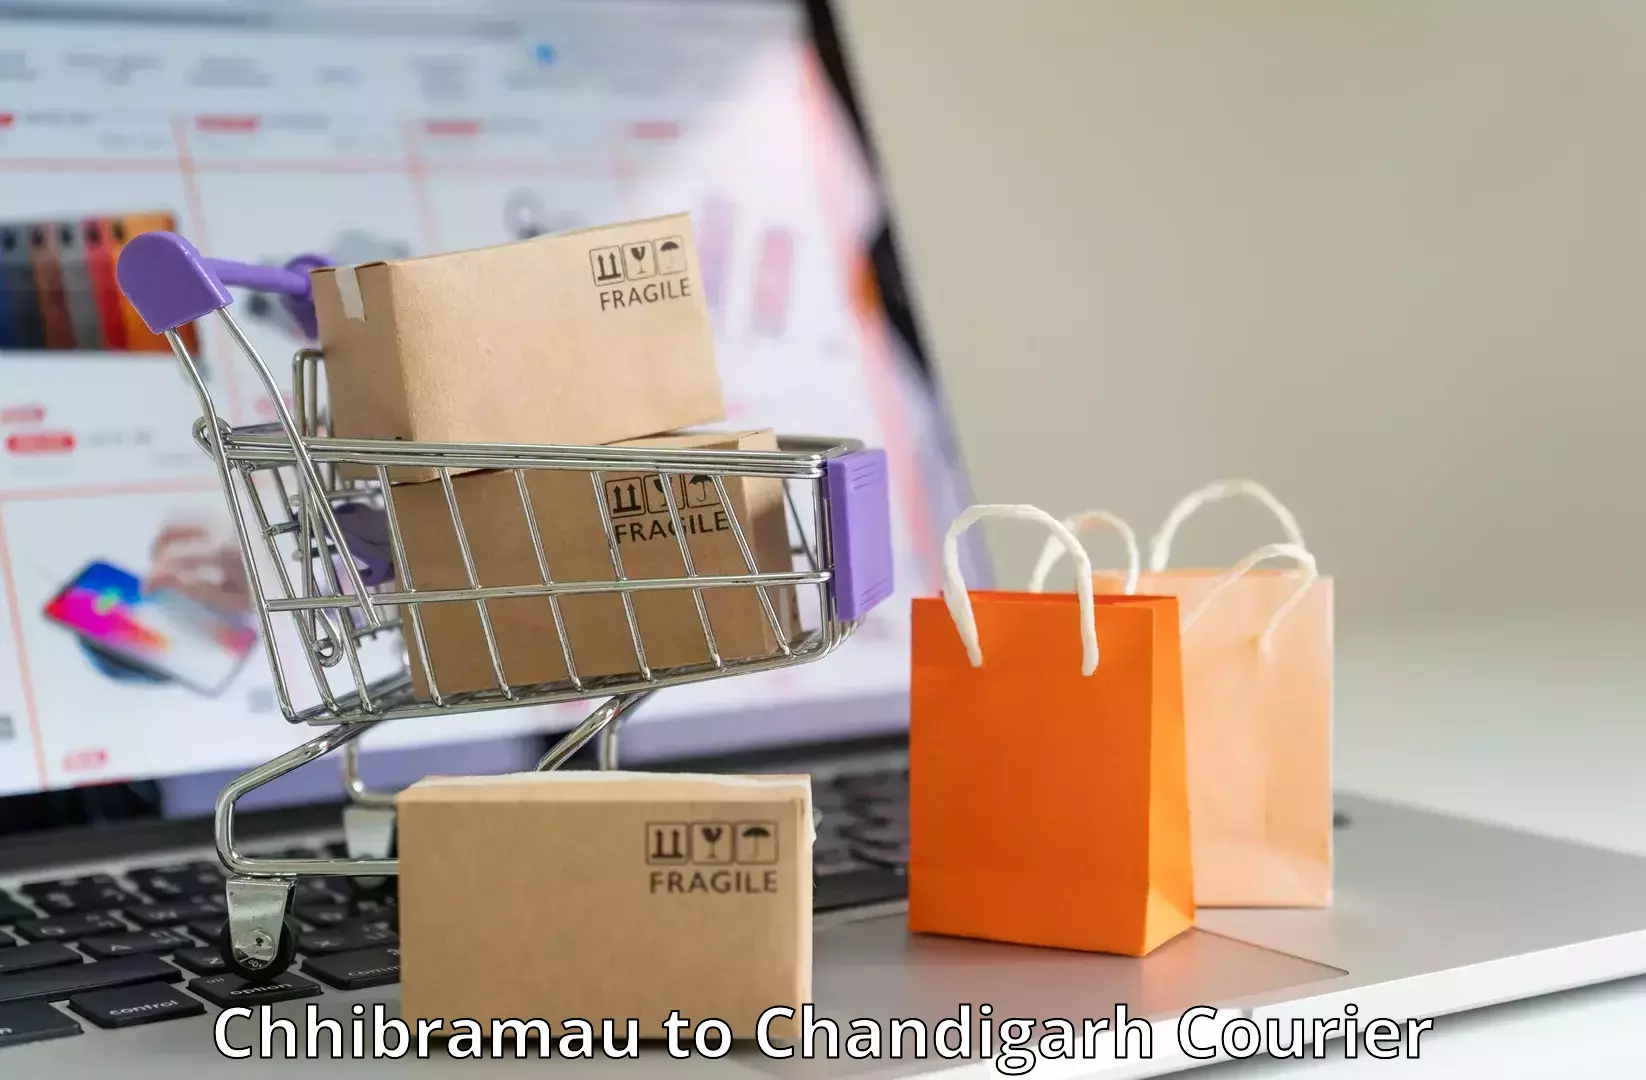 Next-generation courier services Chhibramau to Chandigarh